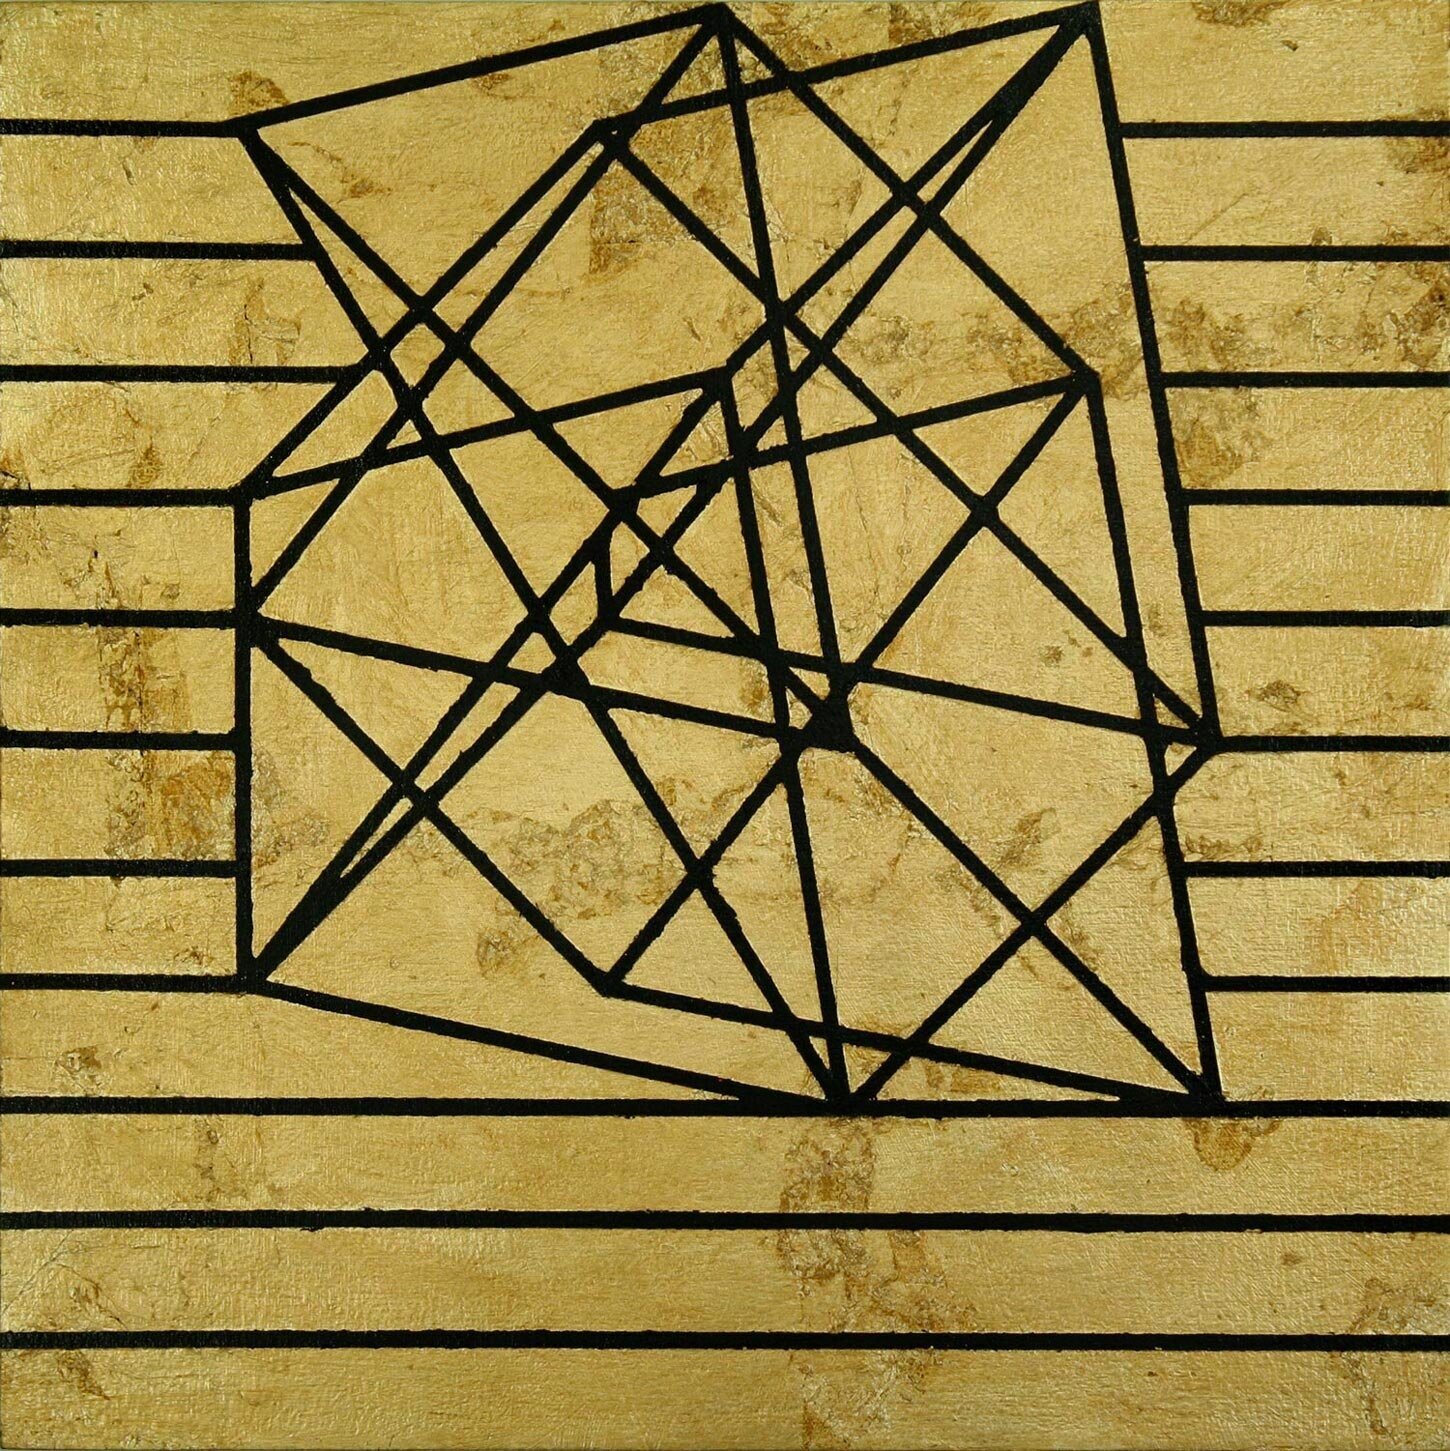    Hisz Dat Cowurlen (III)    Acrylic and gold leaf on wood panel  12” x 12”   